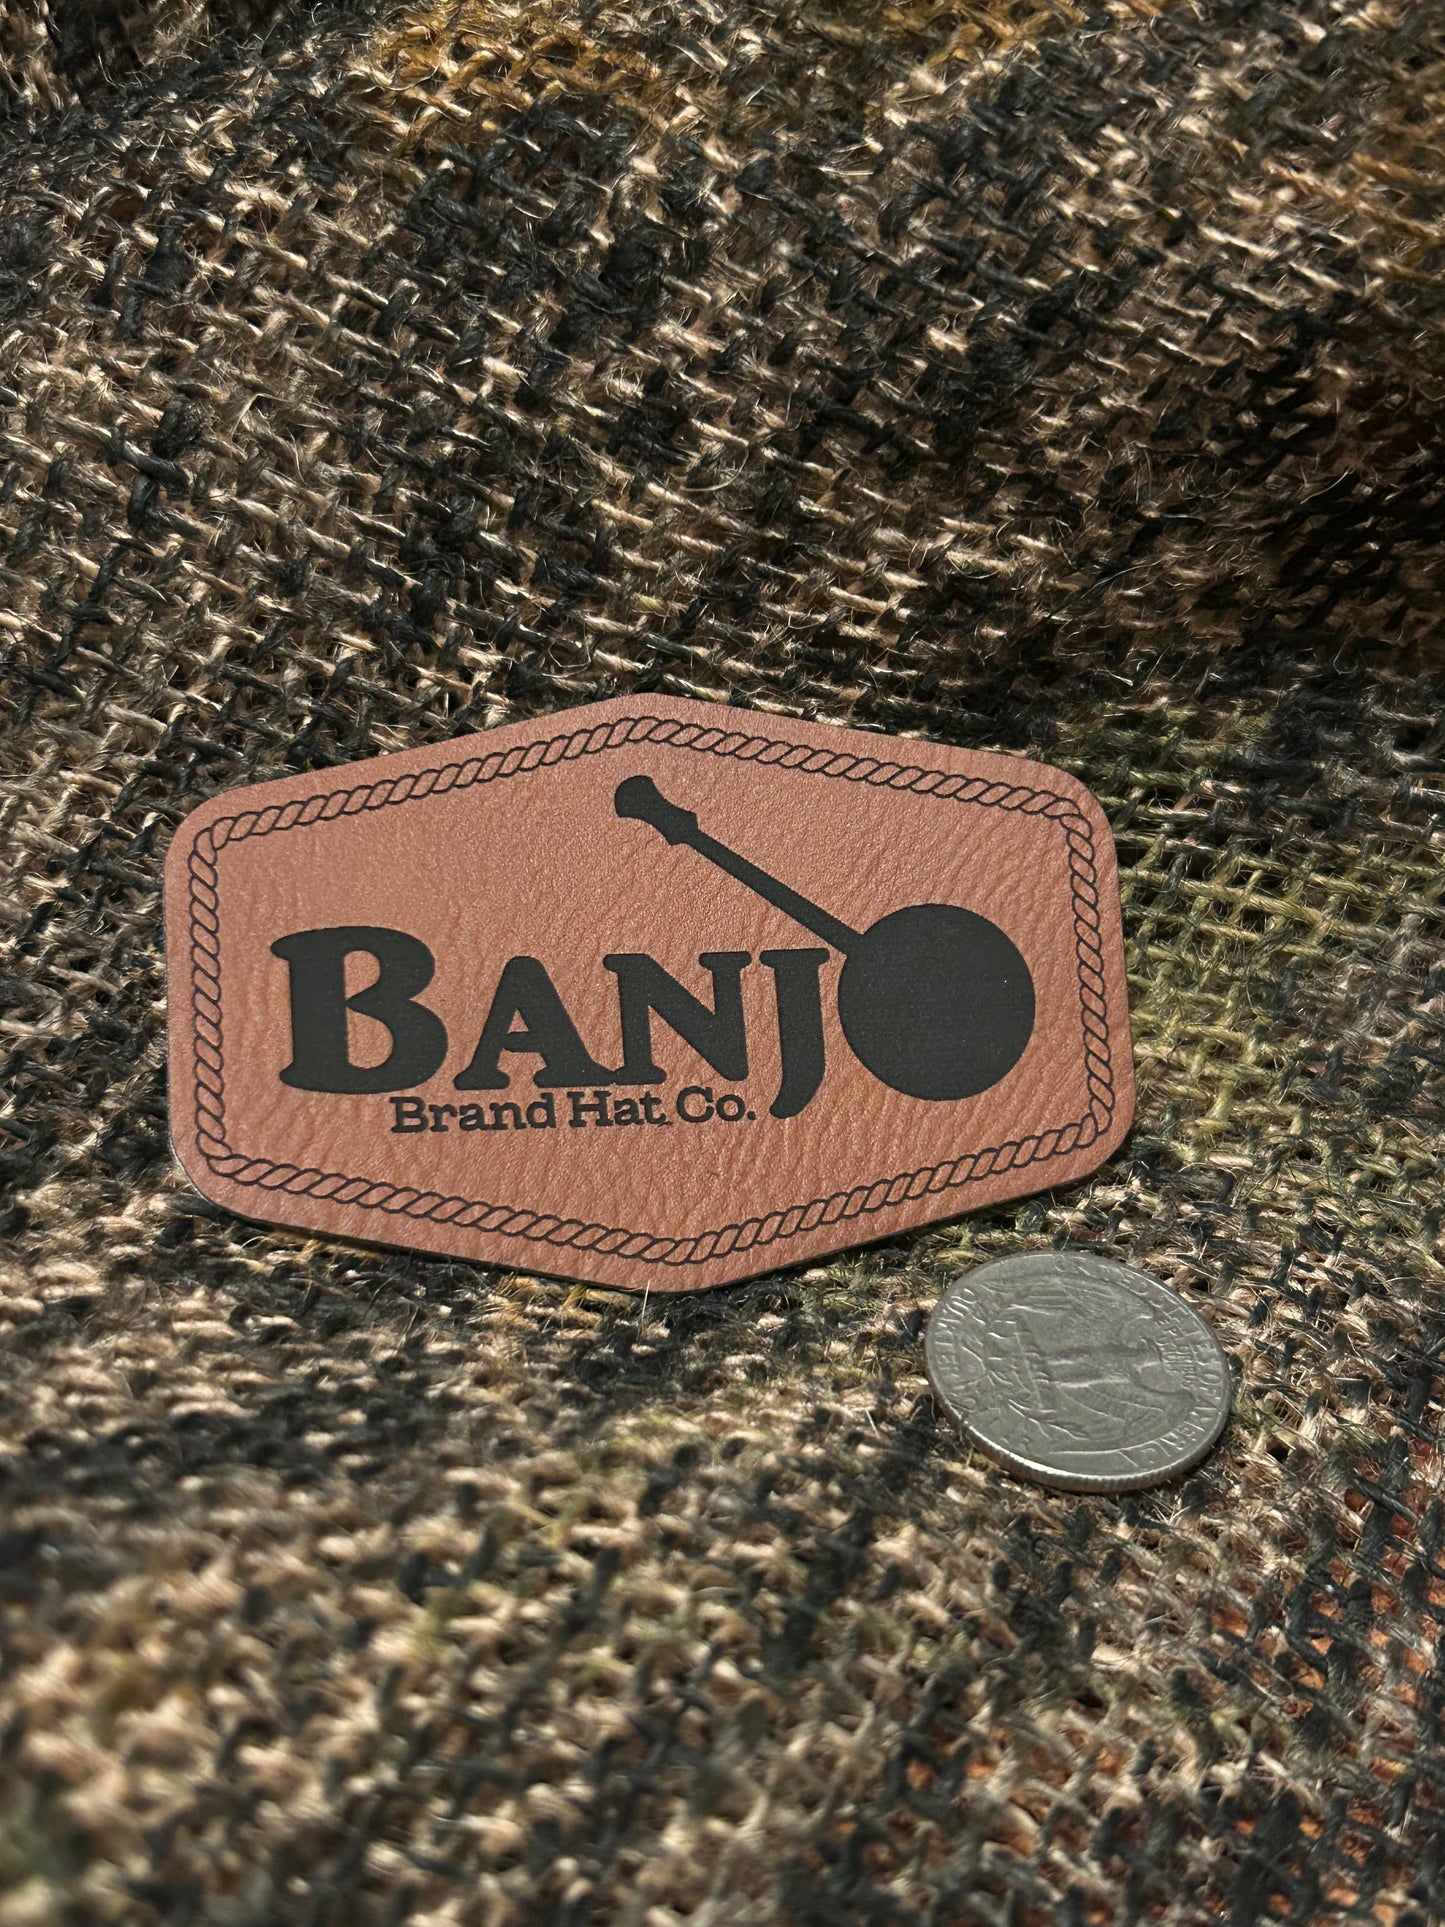 Banjo Brand Leather patch